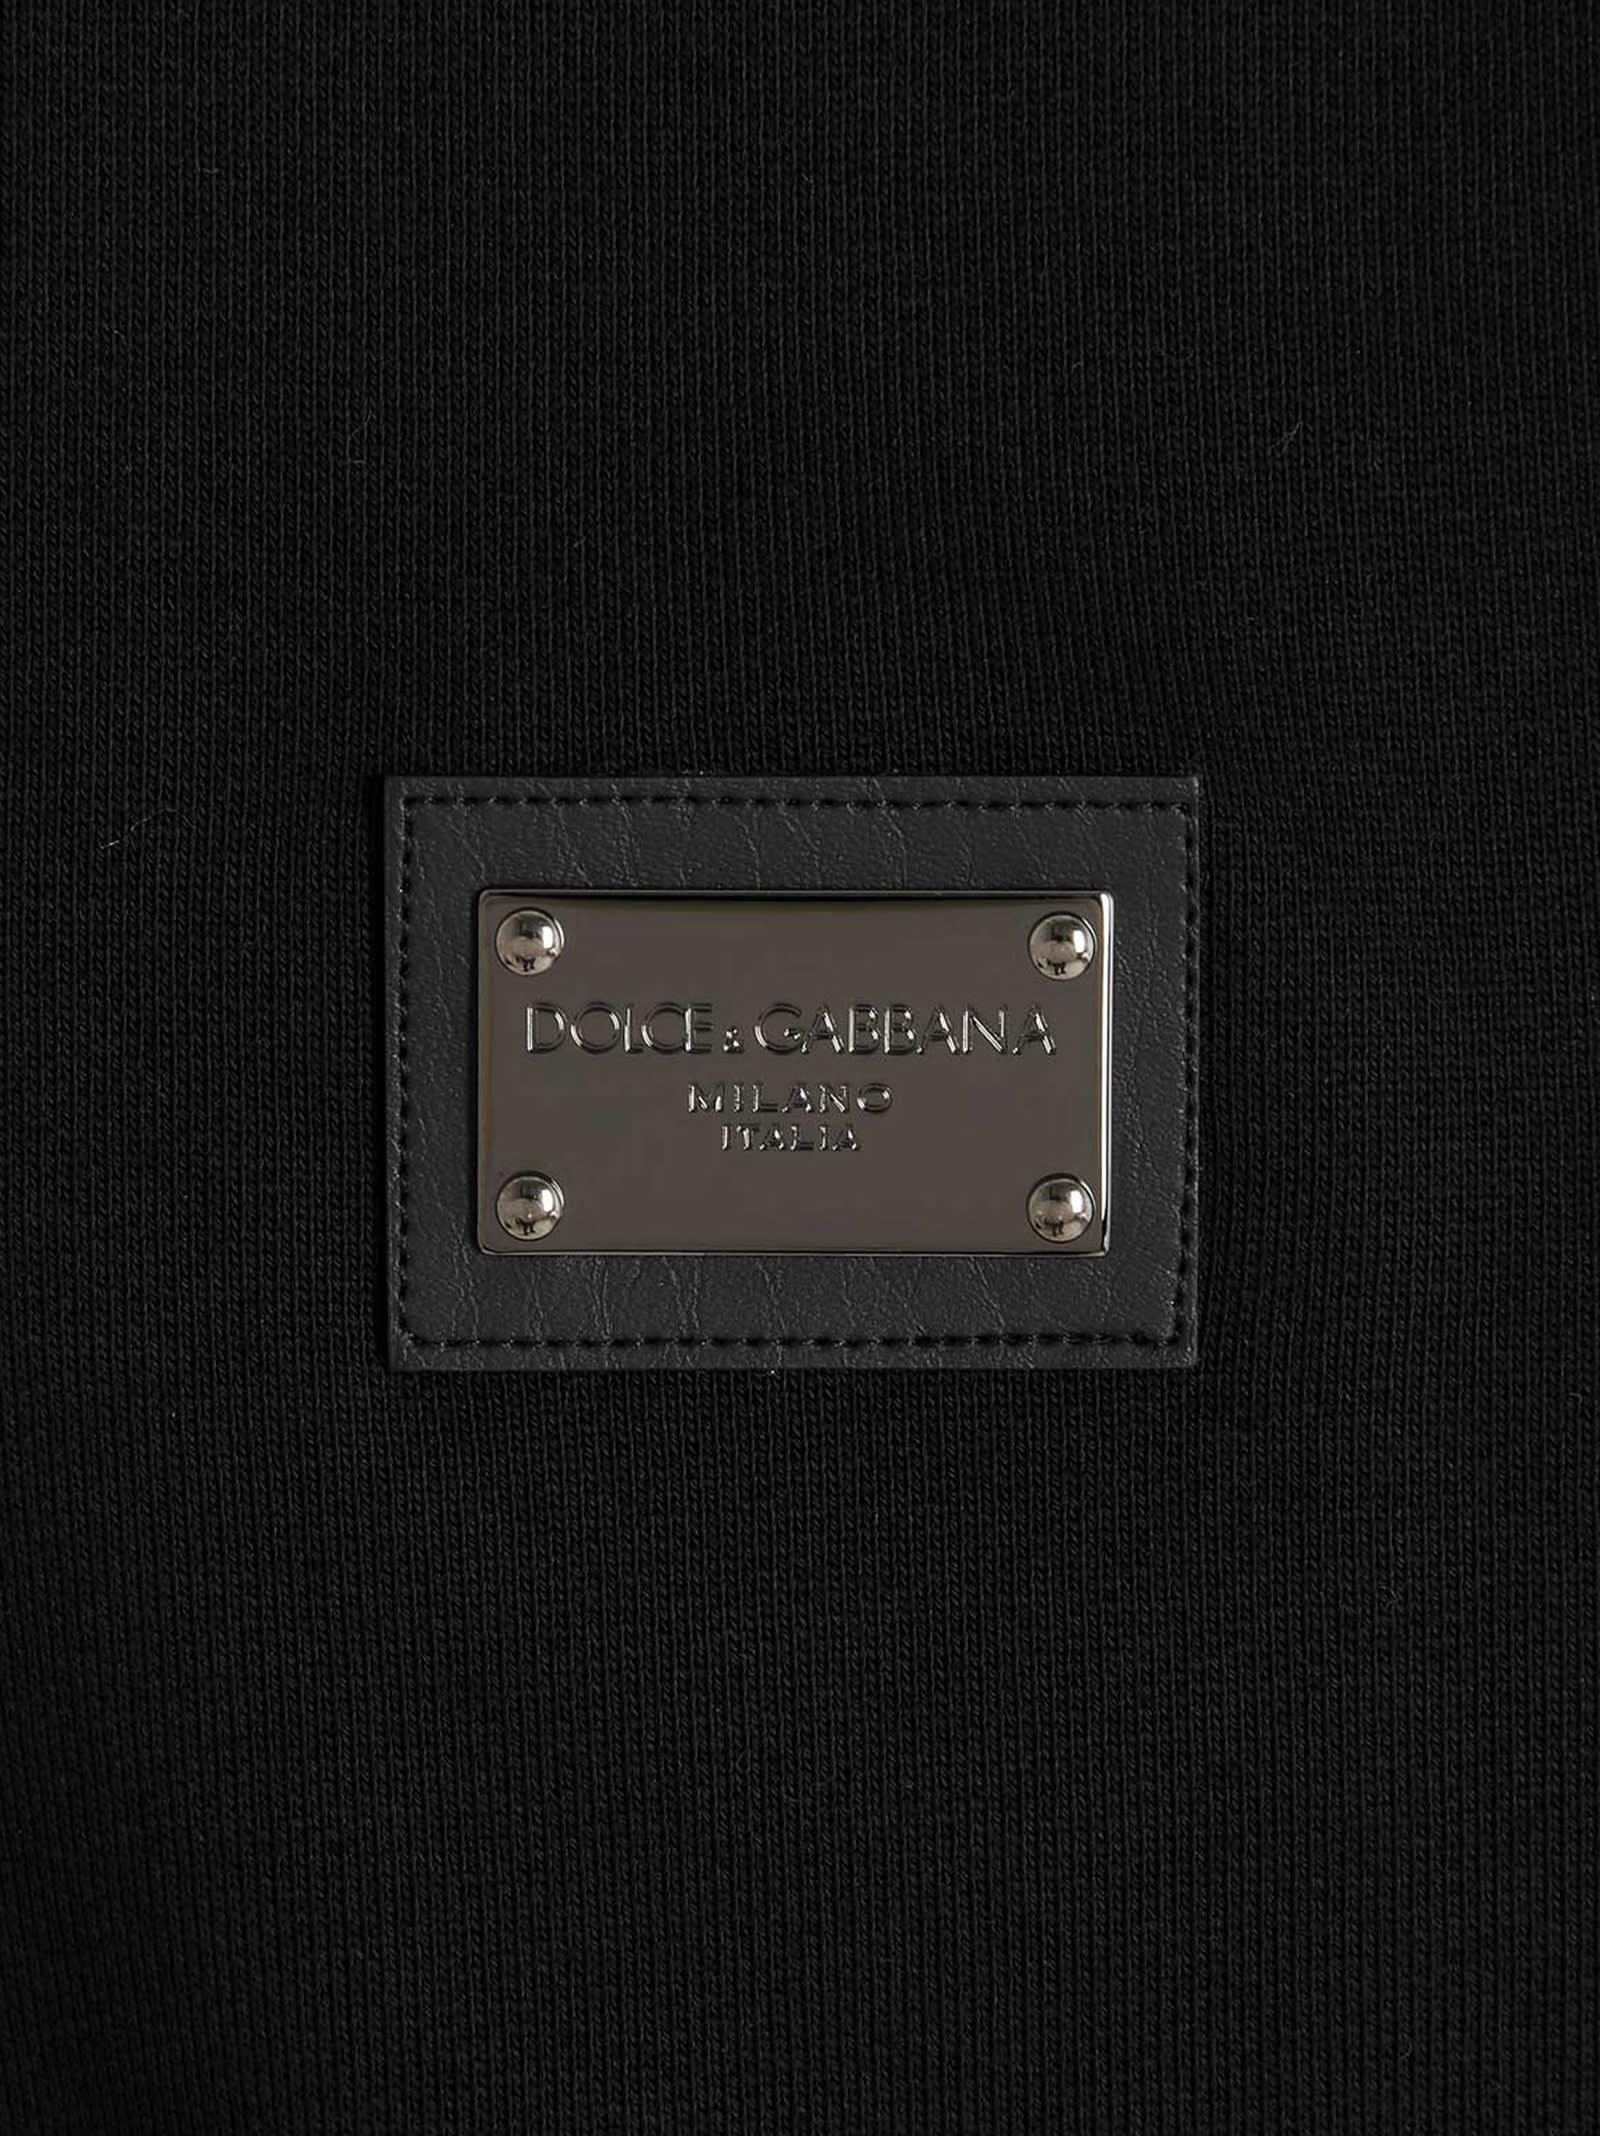 Shop Dolce & Gabbana Dg Essential Sweatshirt In Black